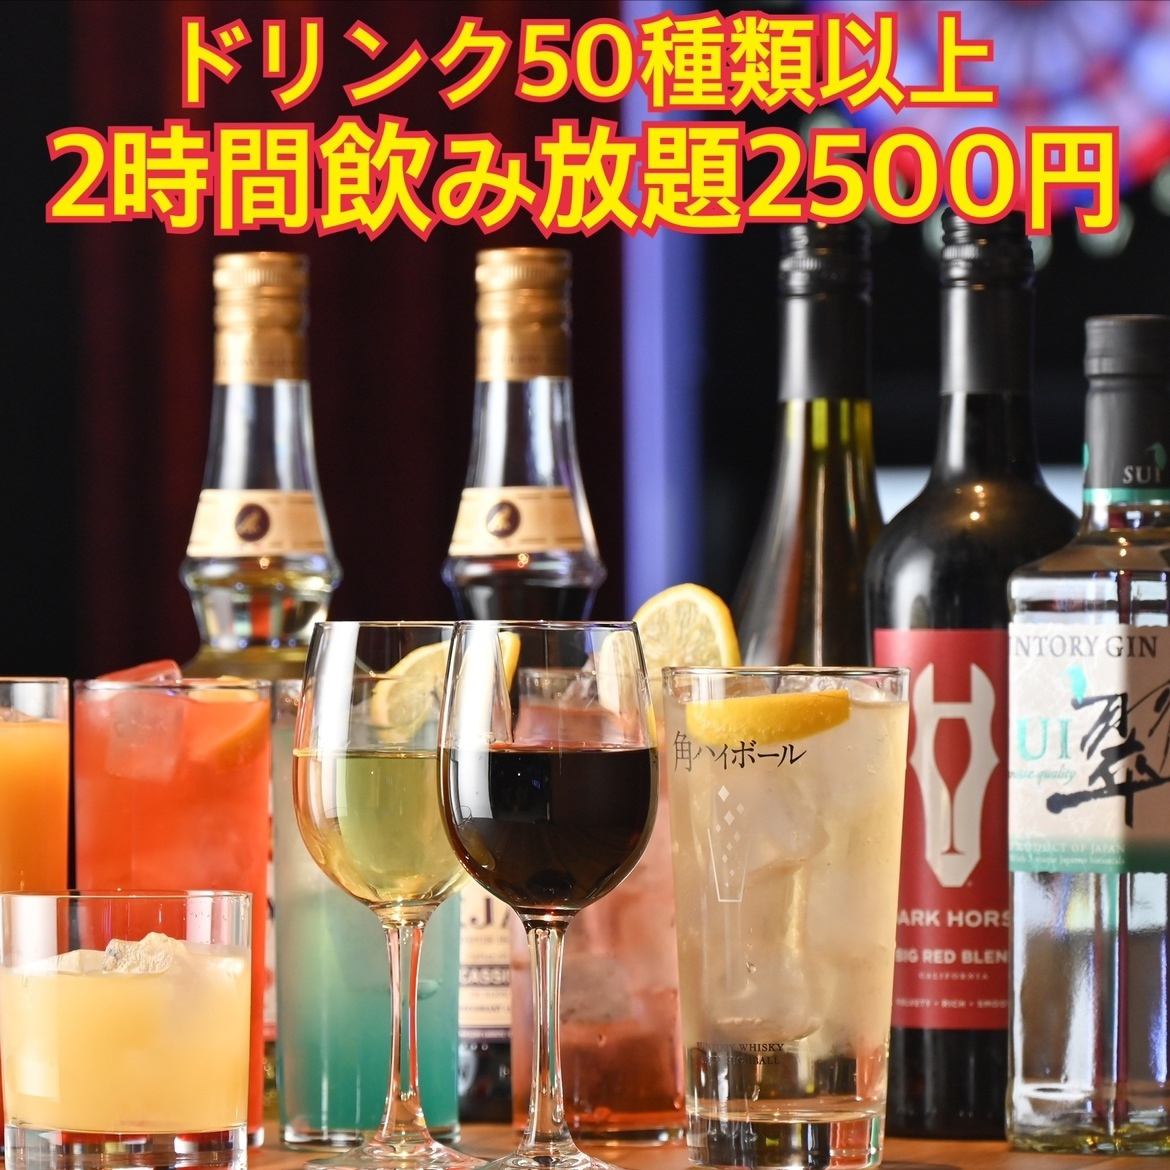 단품 음료 무제한 2 시간 2500 엔에서 ★ 2 차회, 3 차회에 이용하십시오!